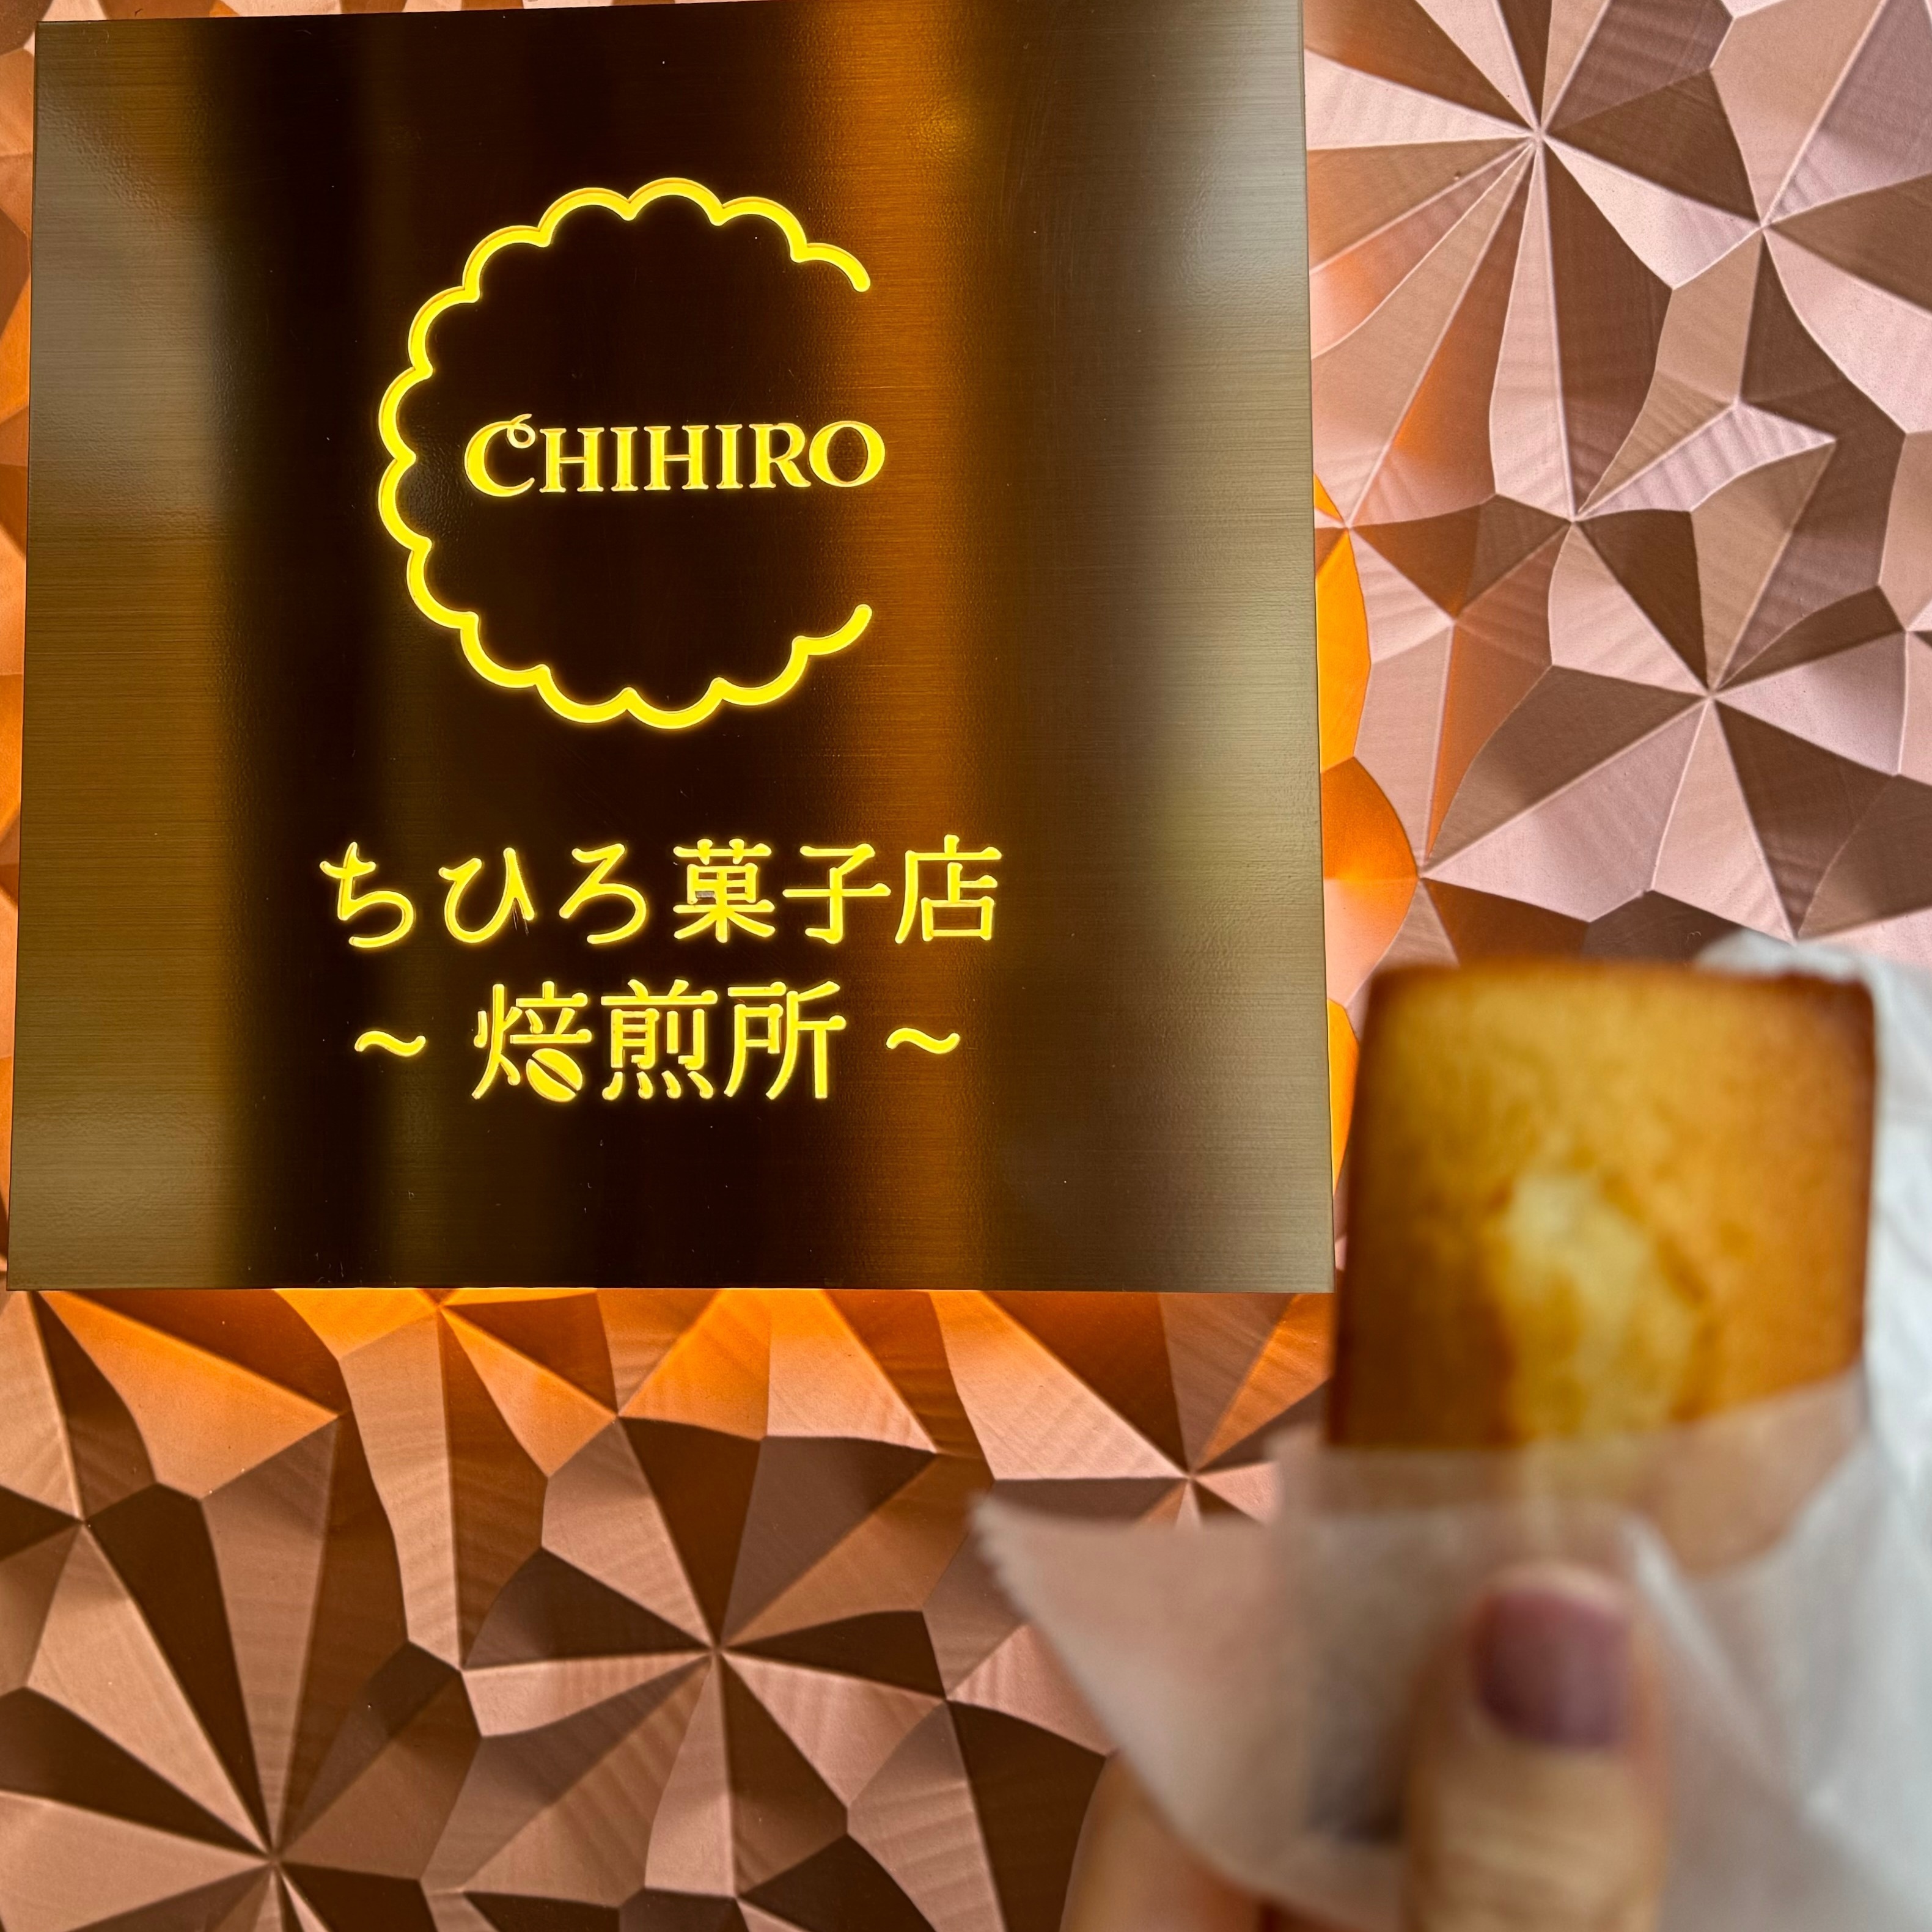 【大阪】過去一美味しいに出会えた♡焼きたてフィナンシェが食べられる「ちひろ菓子店 焙煎所」